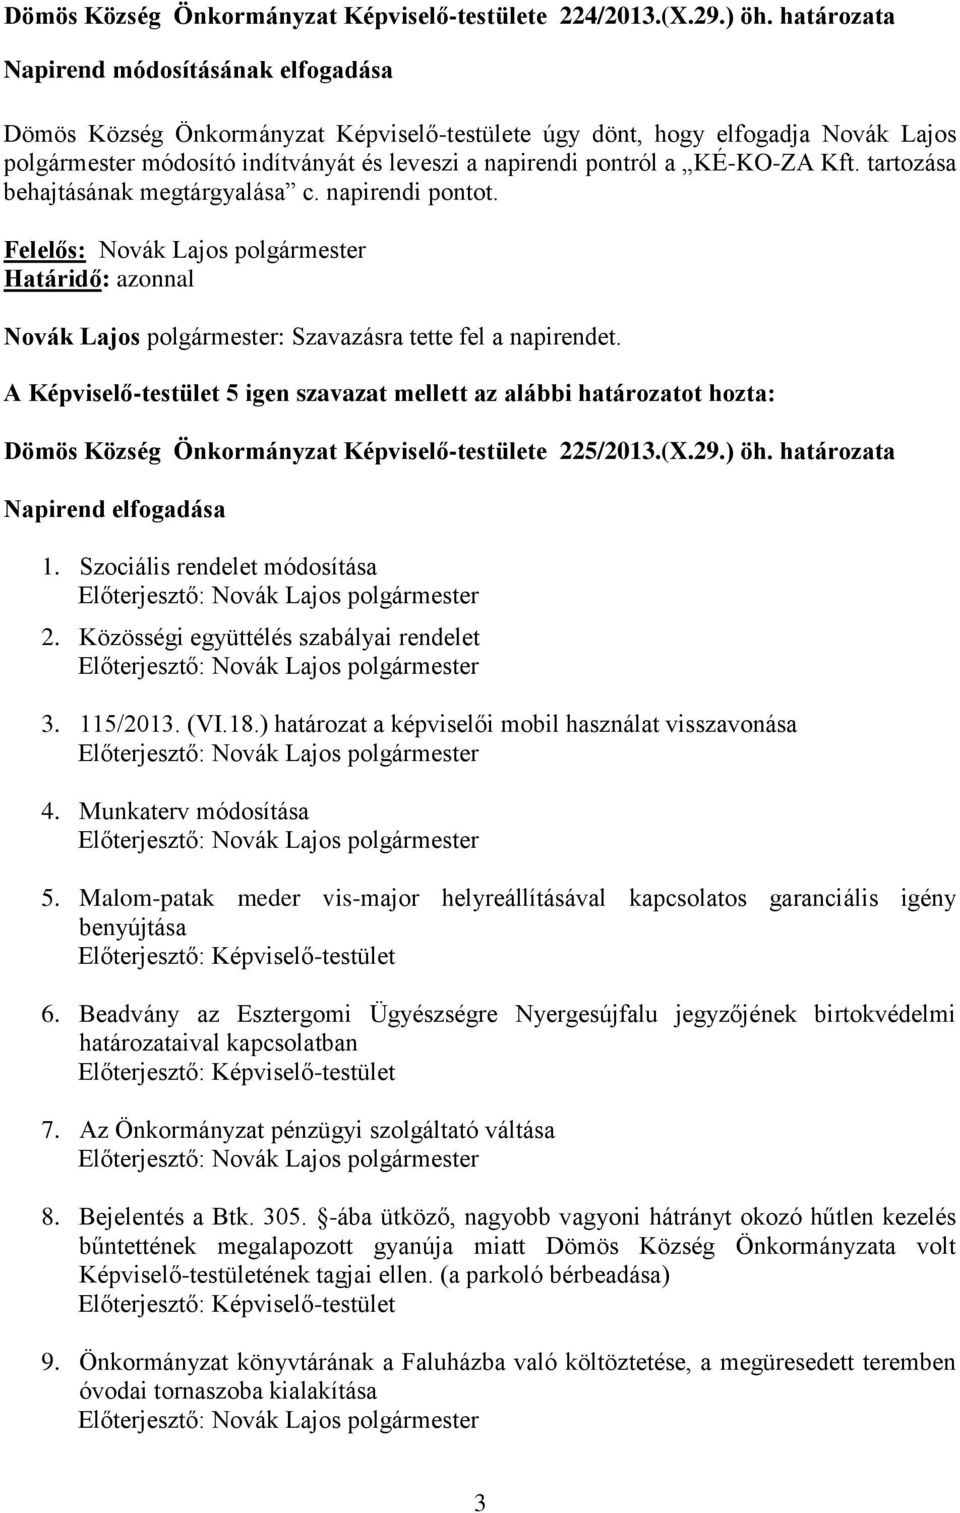 KÉ-KO-ZA Kft. tartozása behajtásának megtárgyalása c. napirendi pontot. Novák Lajos polgármester: Szavazásra tette fel a napirendet. Dömös Község Önkormányzat Képviselő-testülete 225/2013.(X.29.) öh.